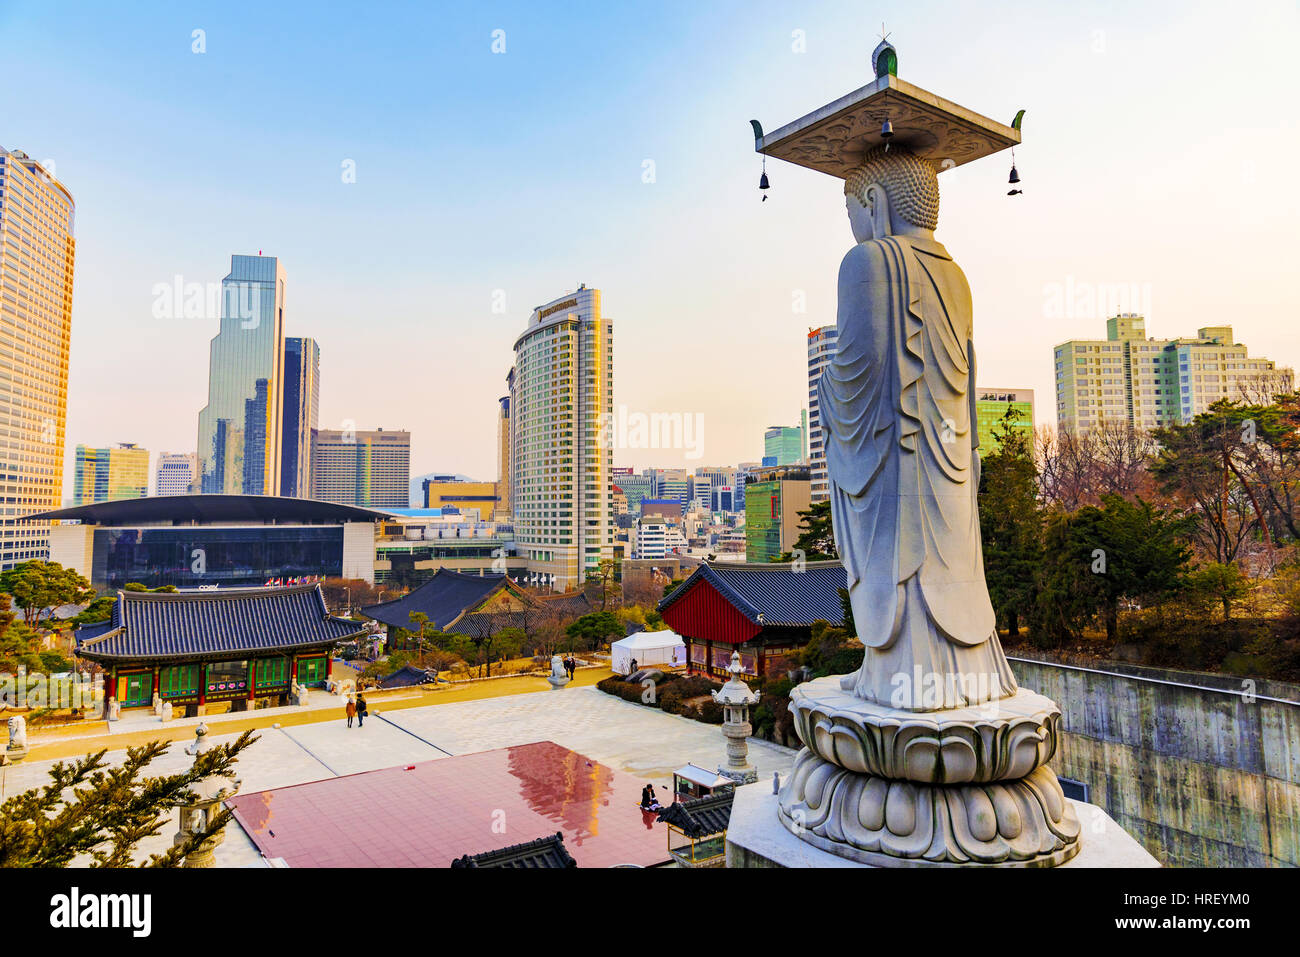 SEOUL, Südkorea - FEBURAR 27: Dies ist Bongeunsa eine berühmte buddhistische Tempel und touristische Attraktion am 27. Februar 2016 in Seoul. Stockfoto